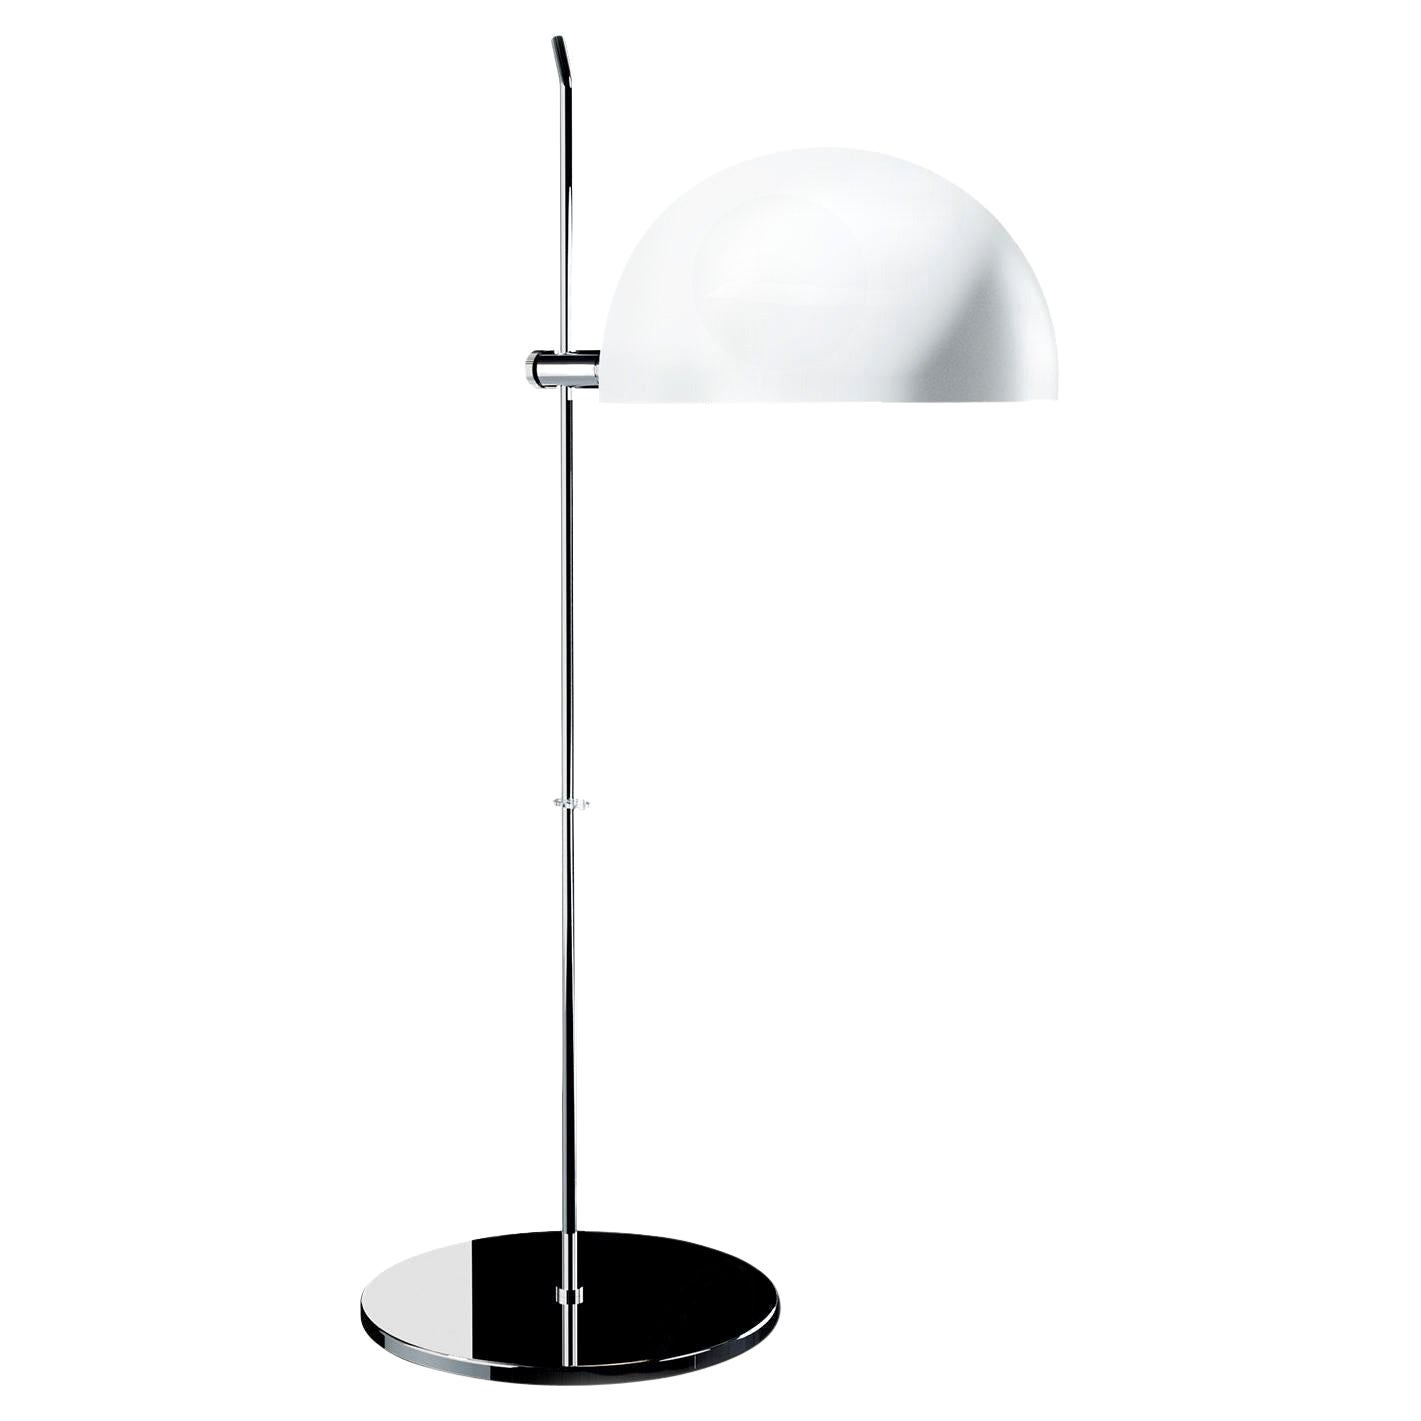 Alain Richard 'A21' Desk Lamp in White for Disderot For Sale